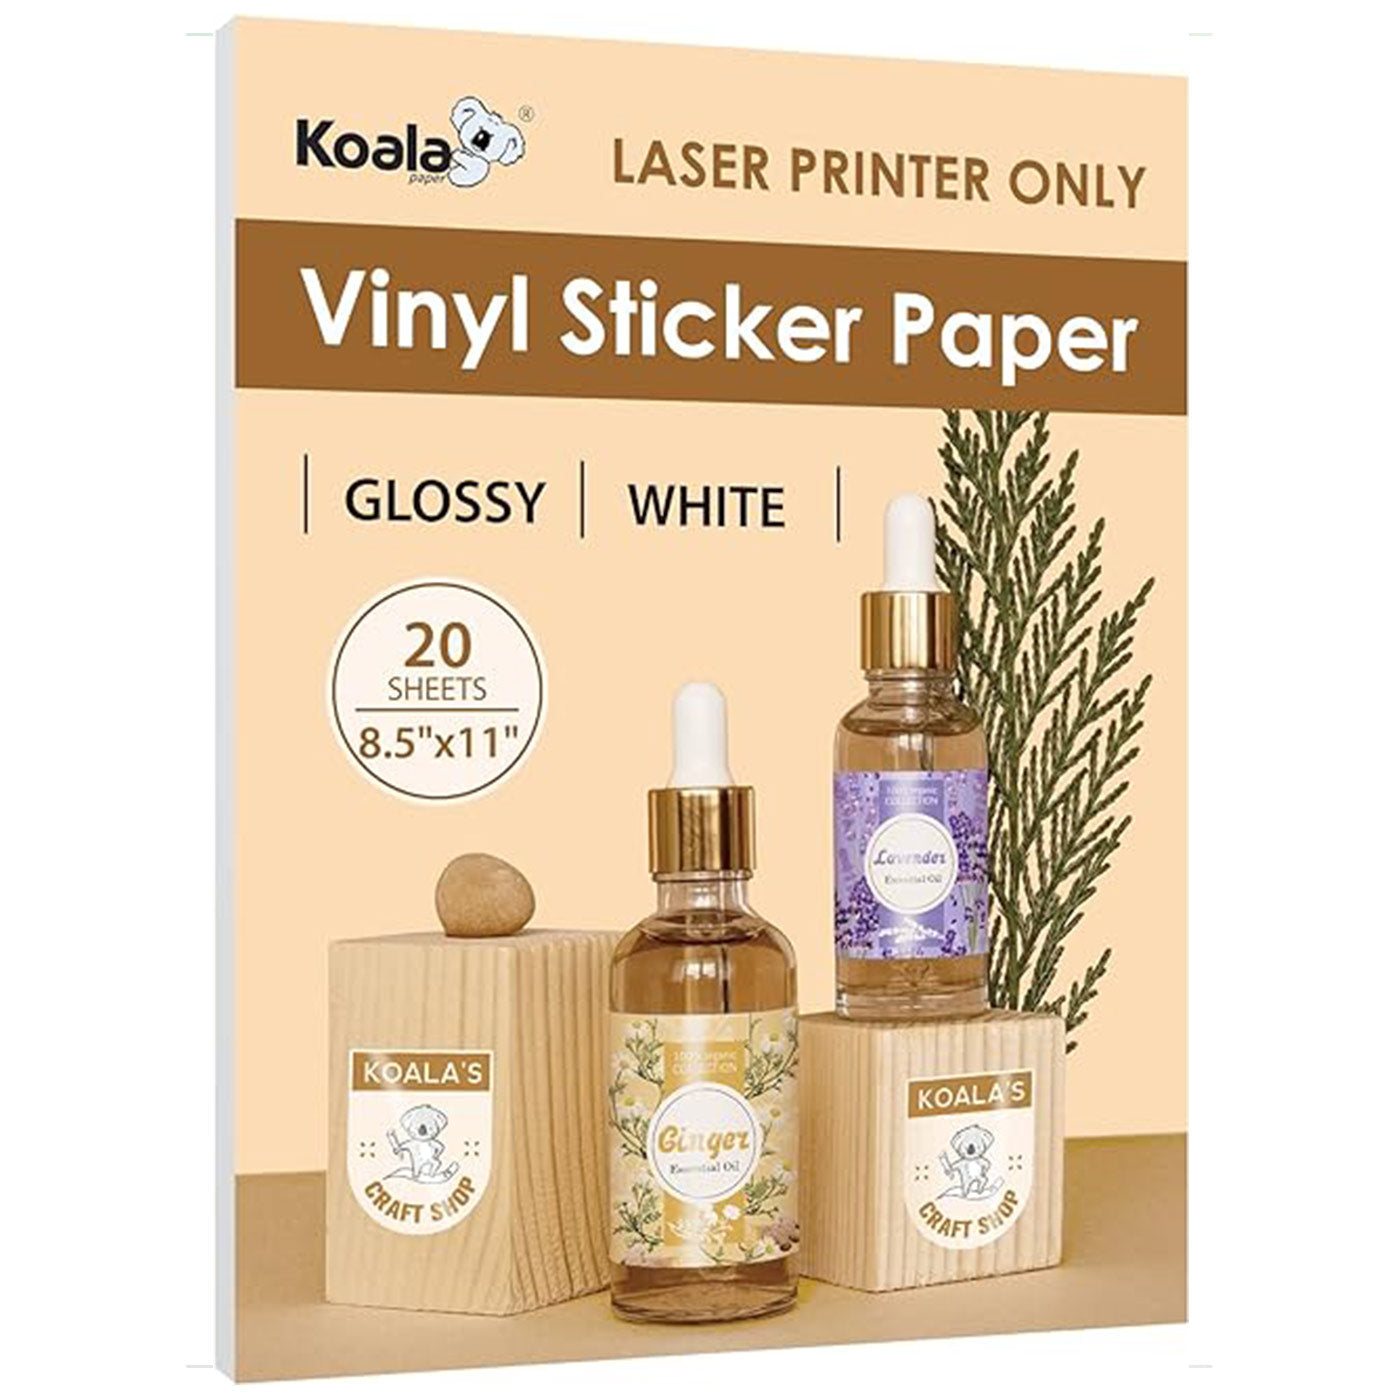 Koala Glossy White Waterproof Printable Vinyl Sticker Paper for LASER Printer 20 Sheets